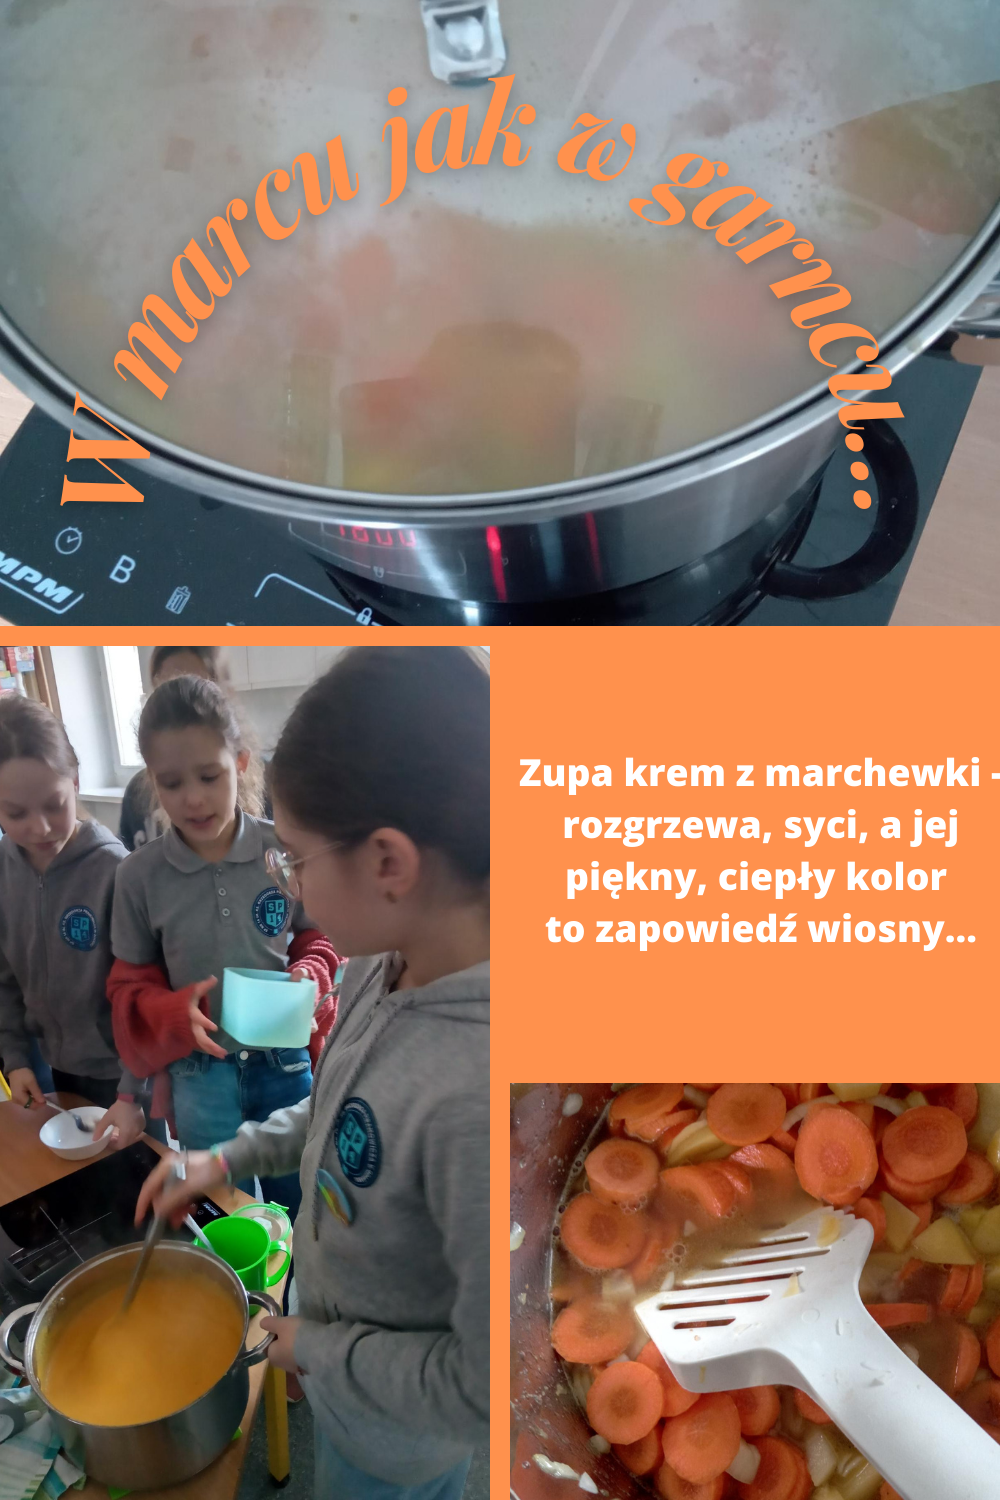 Na zdjęciach  widać uczniów przygotowujących zupę. Obierających  i k rojących warzywa, mieszających w garnku składniki. A na koniec gotową zupę krem z marchewki, którą można się już delektować.